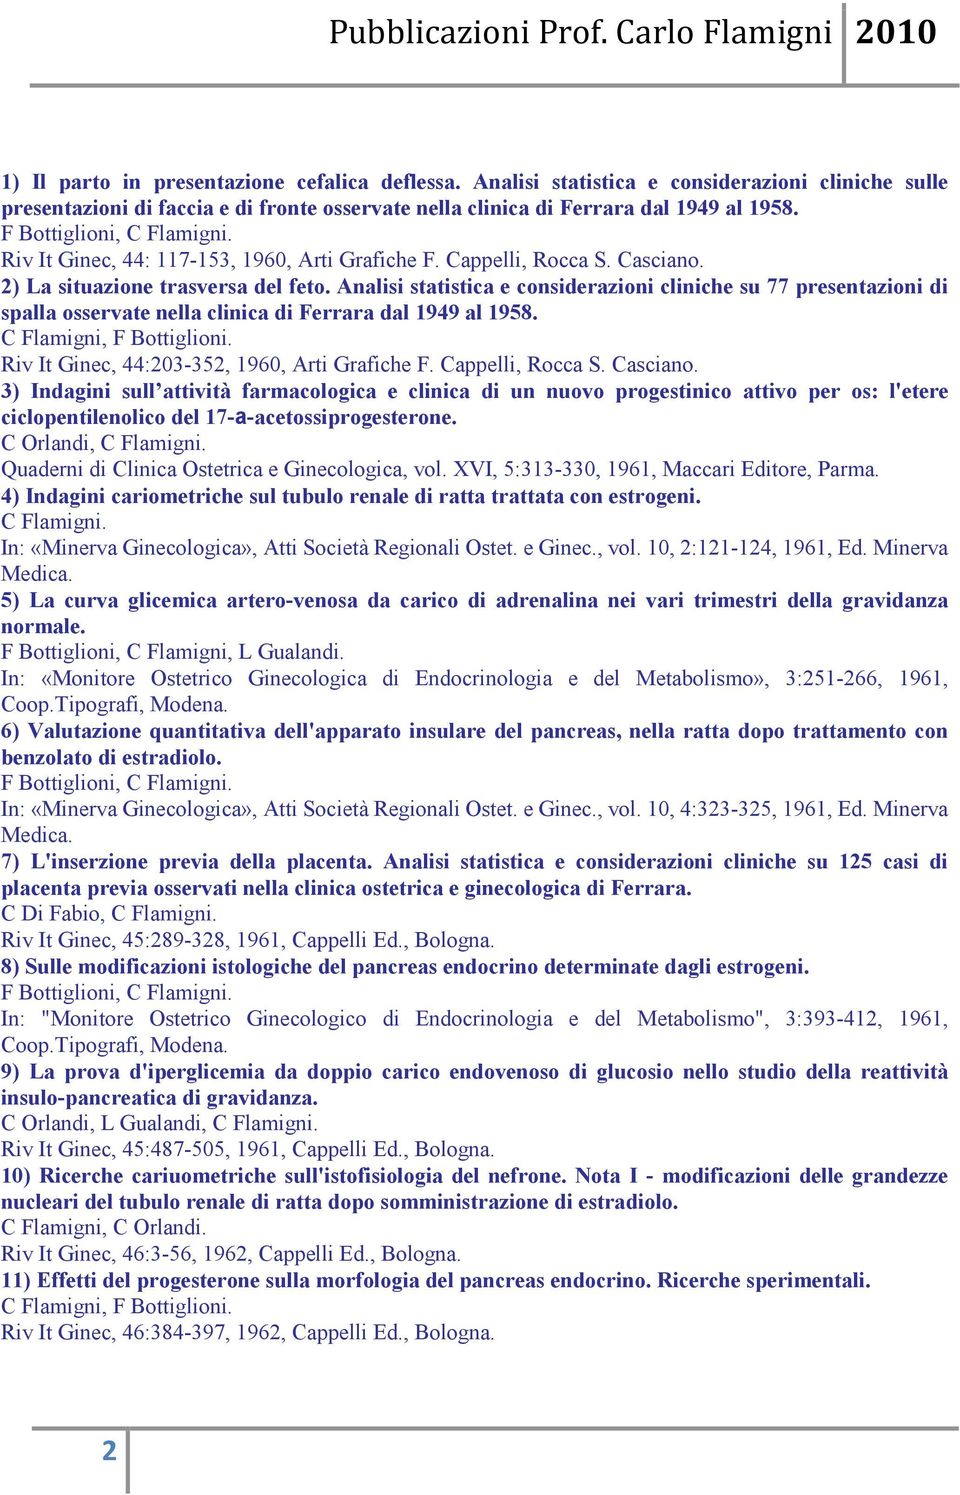 Analisi statistica e considerazioni cliniche su 77 presentazioni di spalla osservate nella clinica di Ferrara dal 1949 al 1958. C Flamigni, F Bottiglioni.